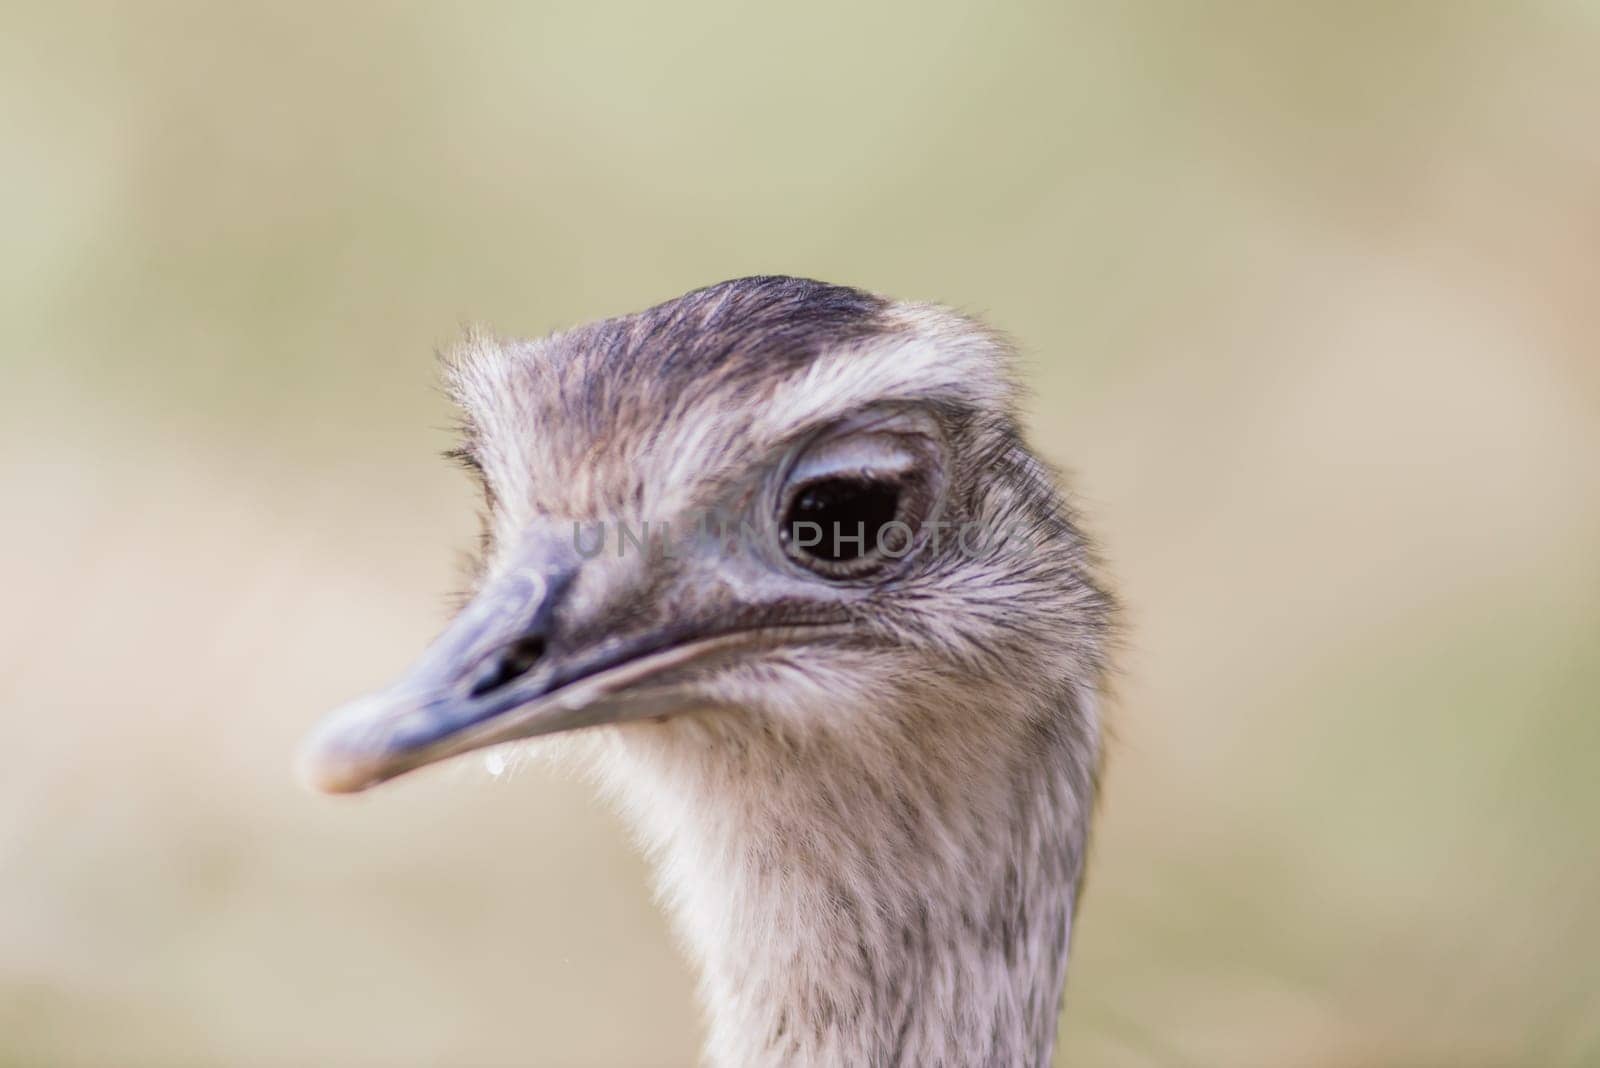 Ostrich head close up, an autumn weather park outdoors